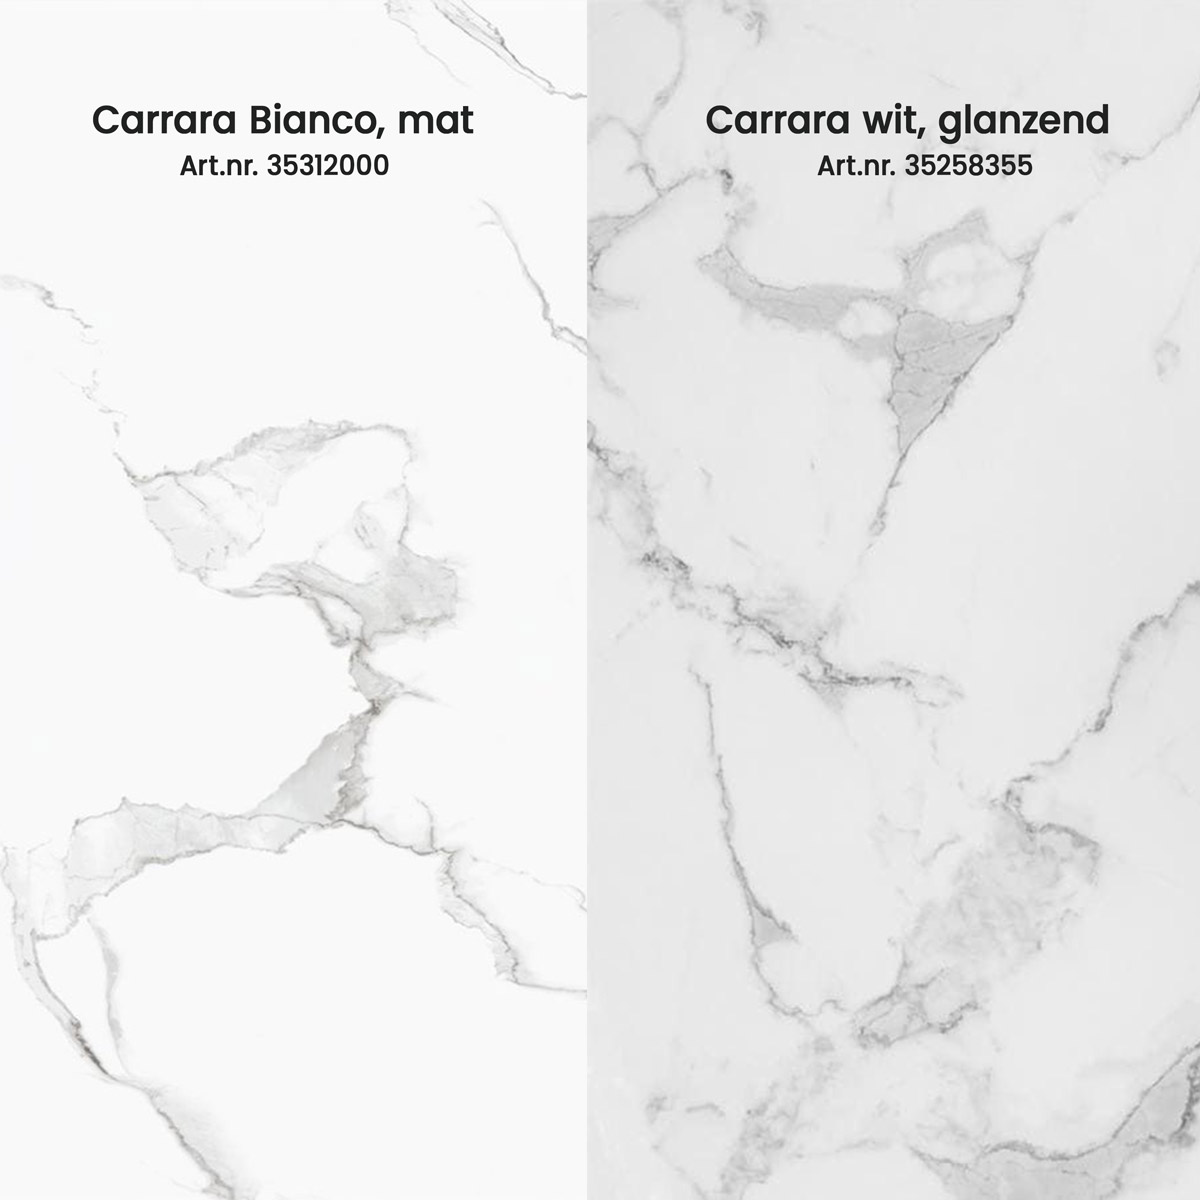 Carrara Bianco vs Carrara Wit